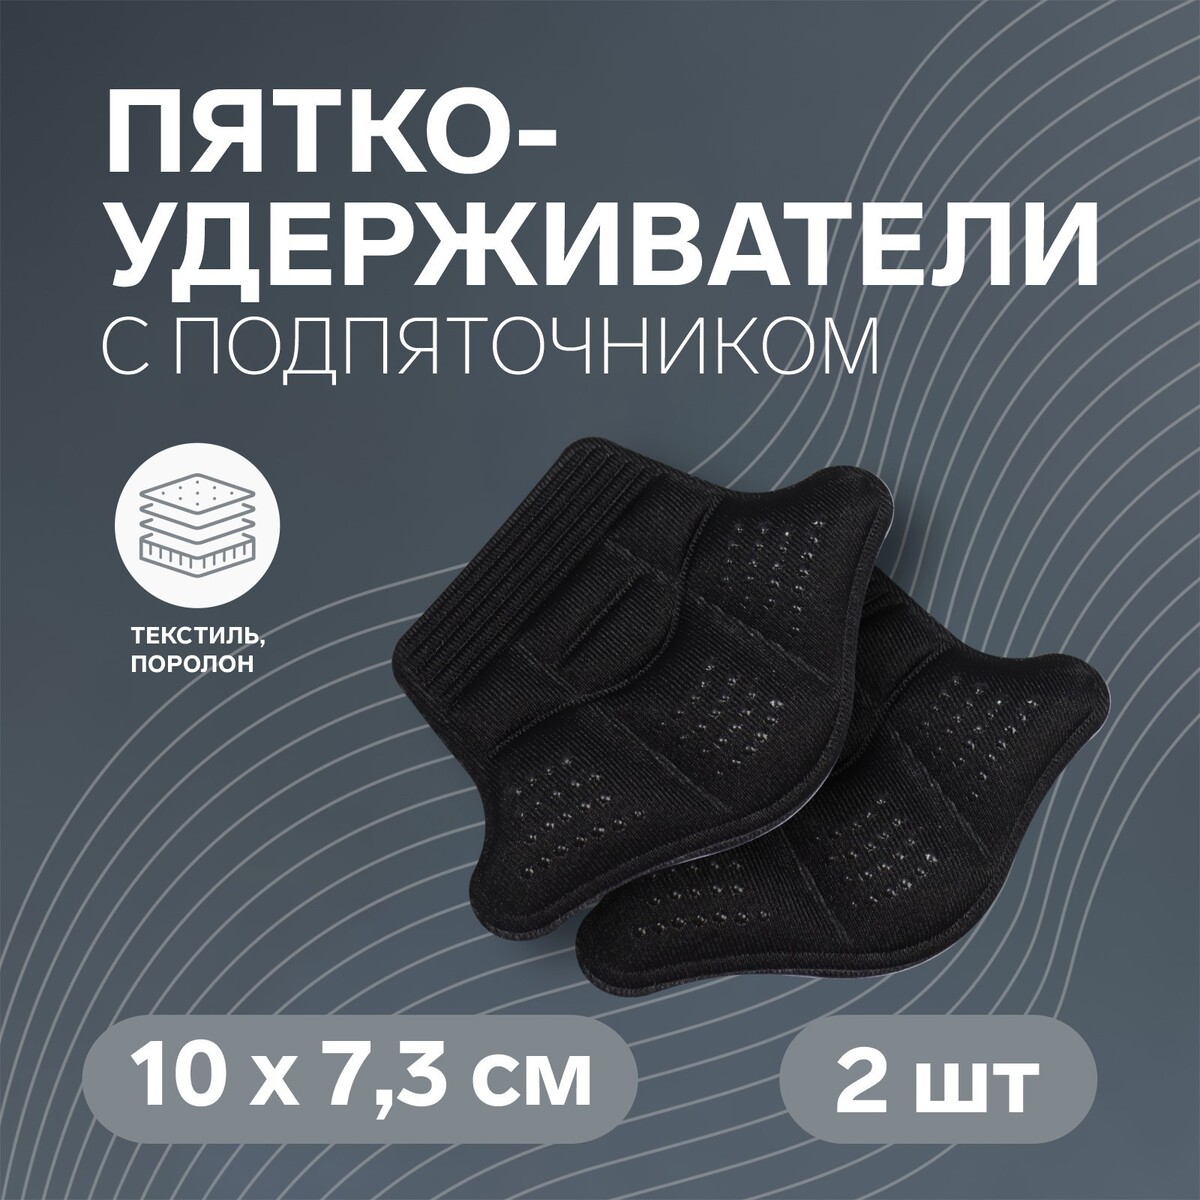 Пяткоудерживатели для обуви, с подпяточником, клеевая основа, 10 × 7,3 см, пара, цвет черный